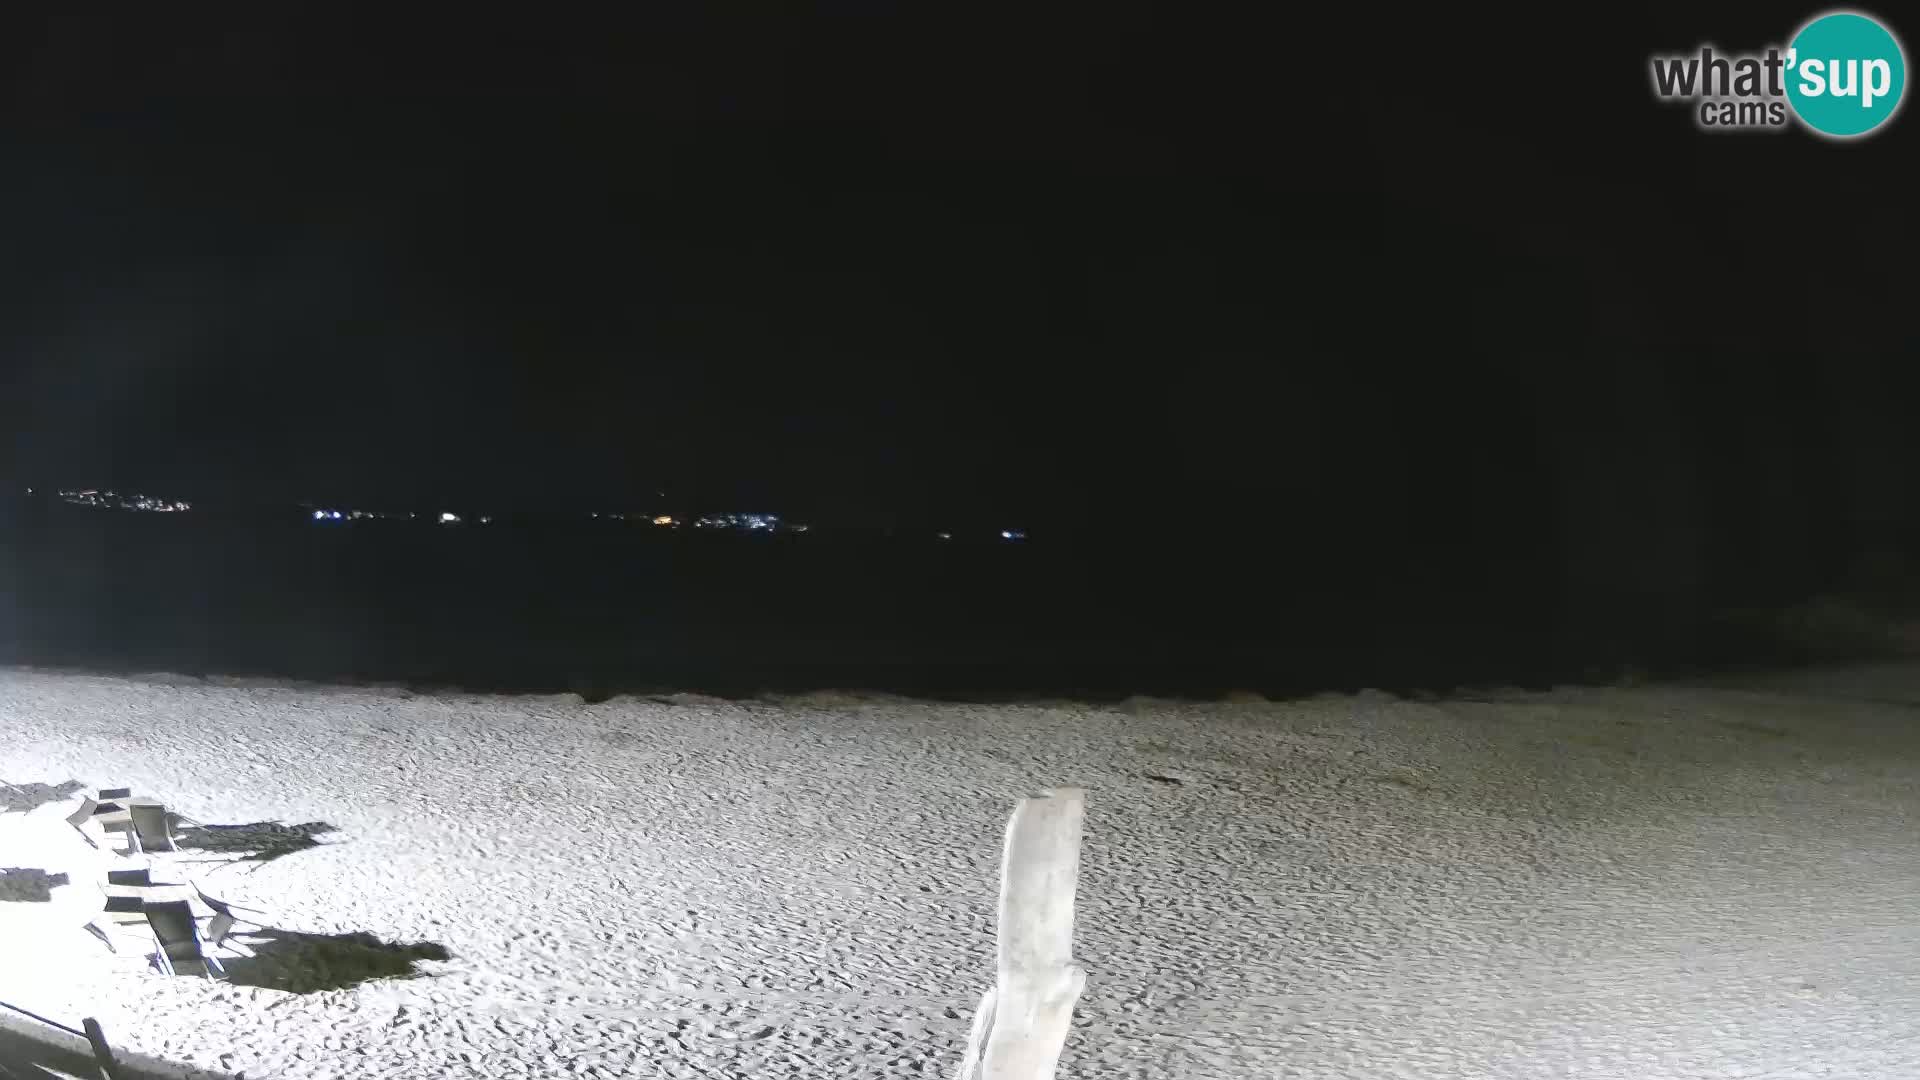 V živo plaža Cala Sabina – spletna kamera Golfo Aranci – Sardinija